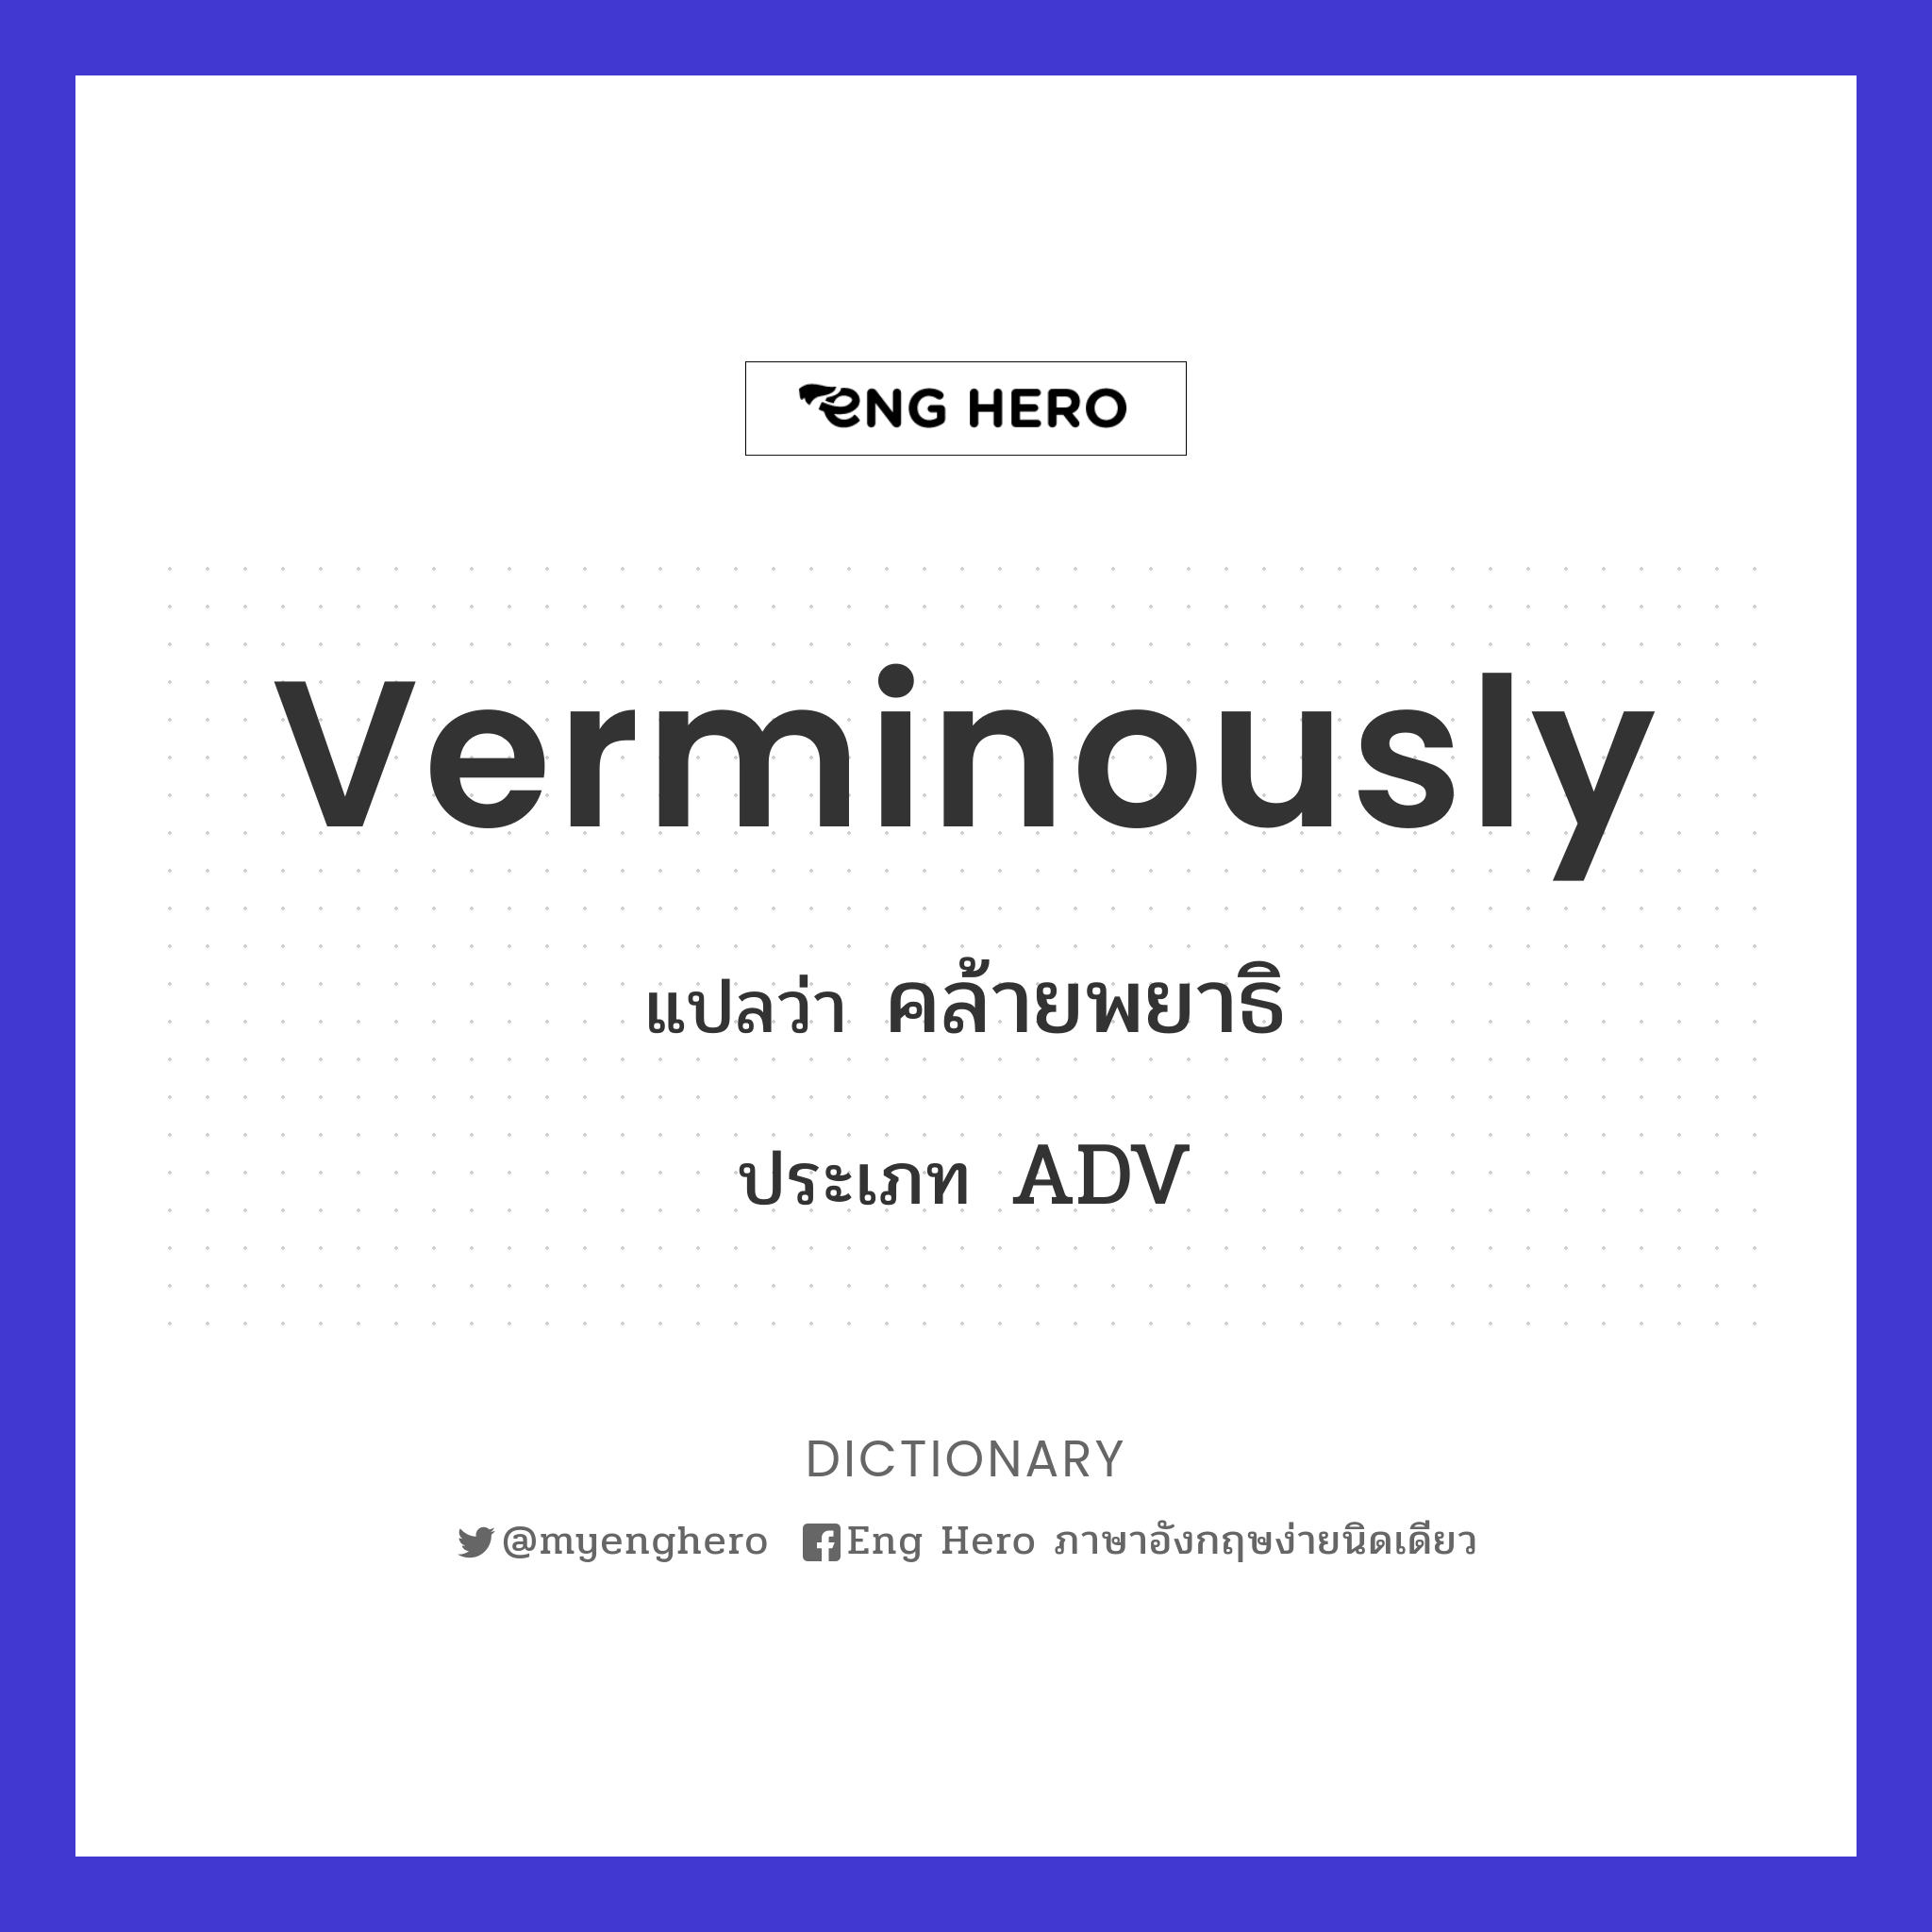 verminously